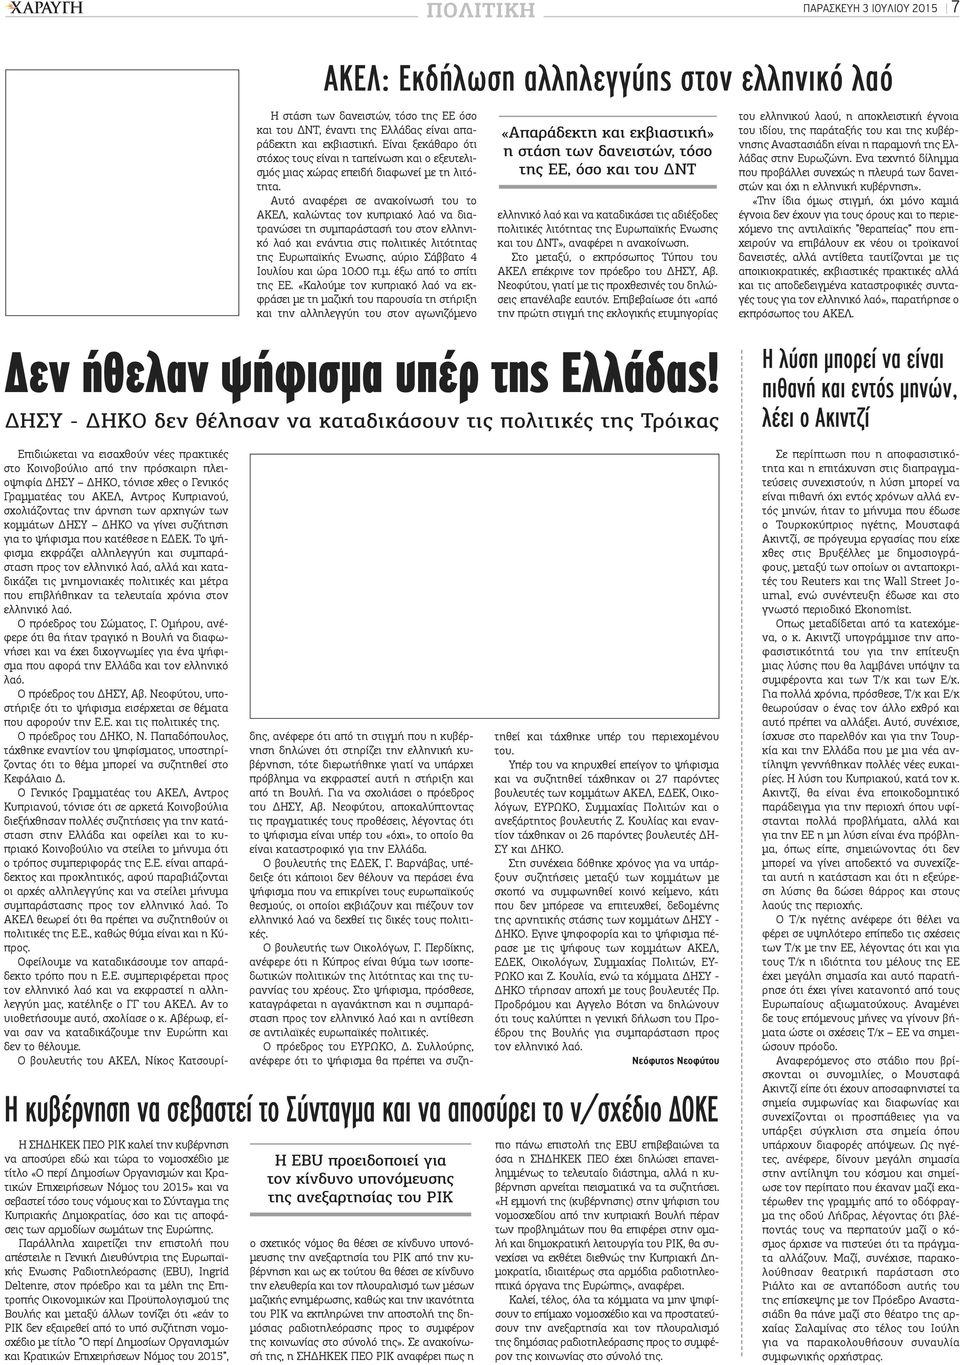 Αυτό αναφέρει σε ανακοίνωσή του το ΑΚΕΛ, καλώντας τον κυπριακό λαό να διατρανώσει τη συμπαράστασή του στον ελληνικό λαό και ενάντια στις πολιτικές λιτότητας της Ευρωπαϊκής Ενωσης, αύριο Σάββατο 4